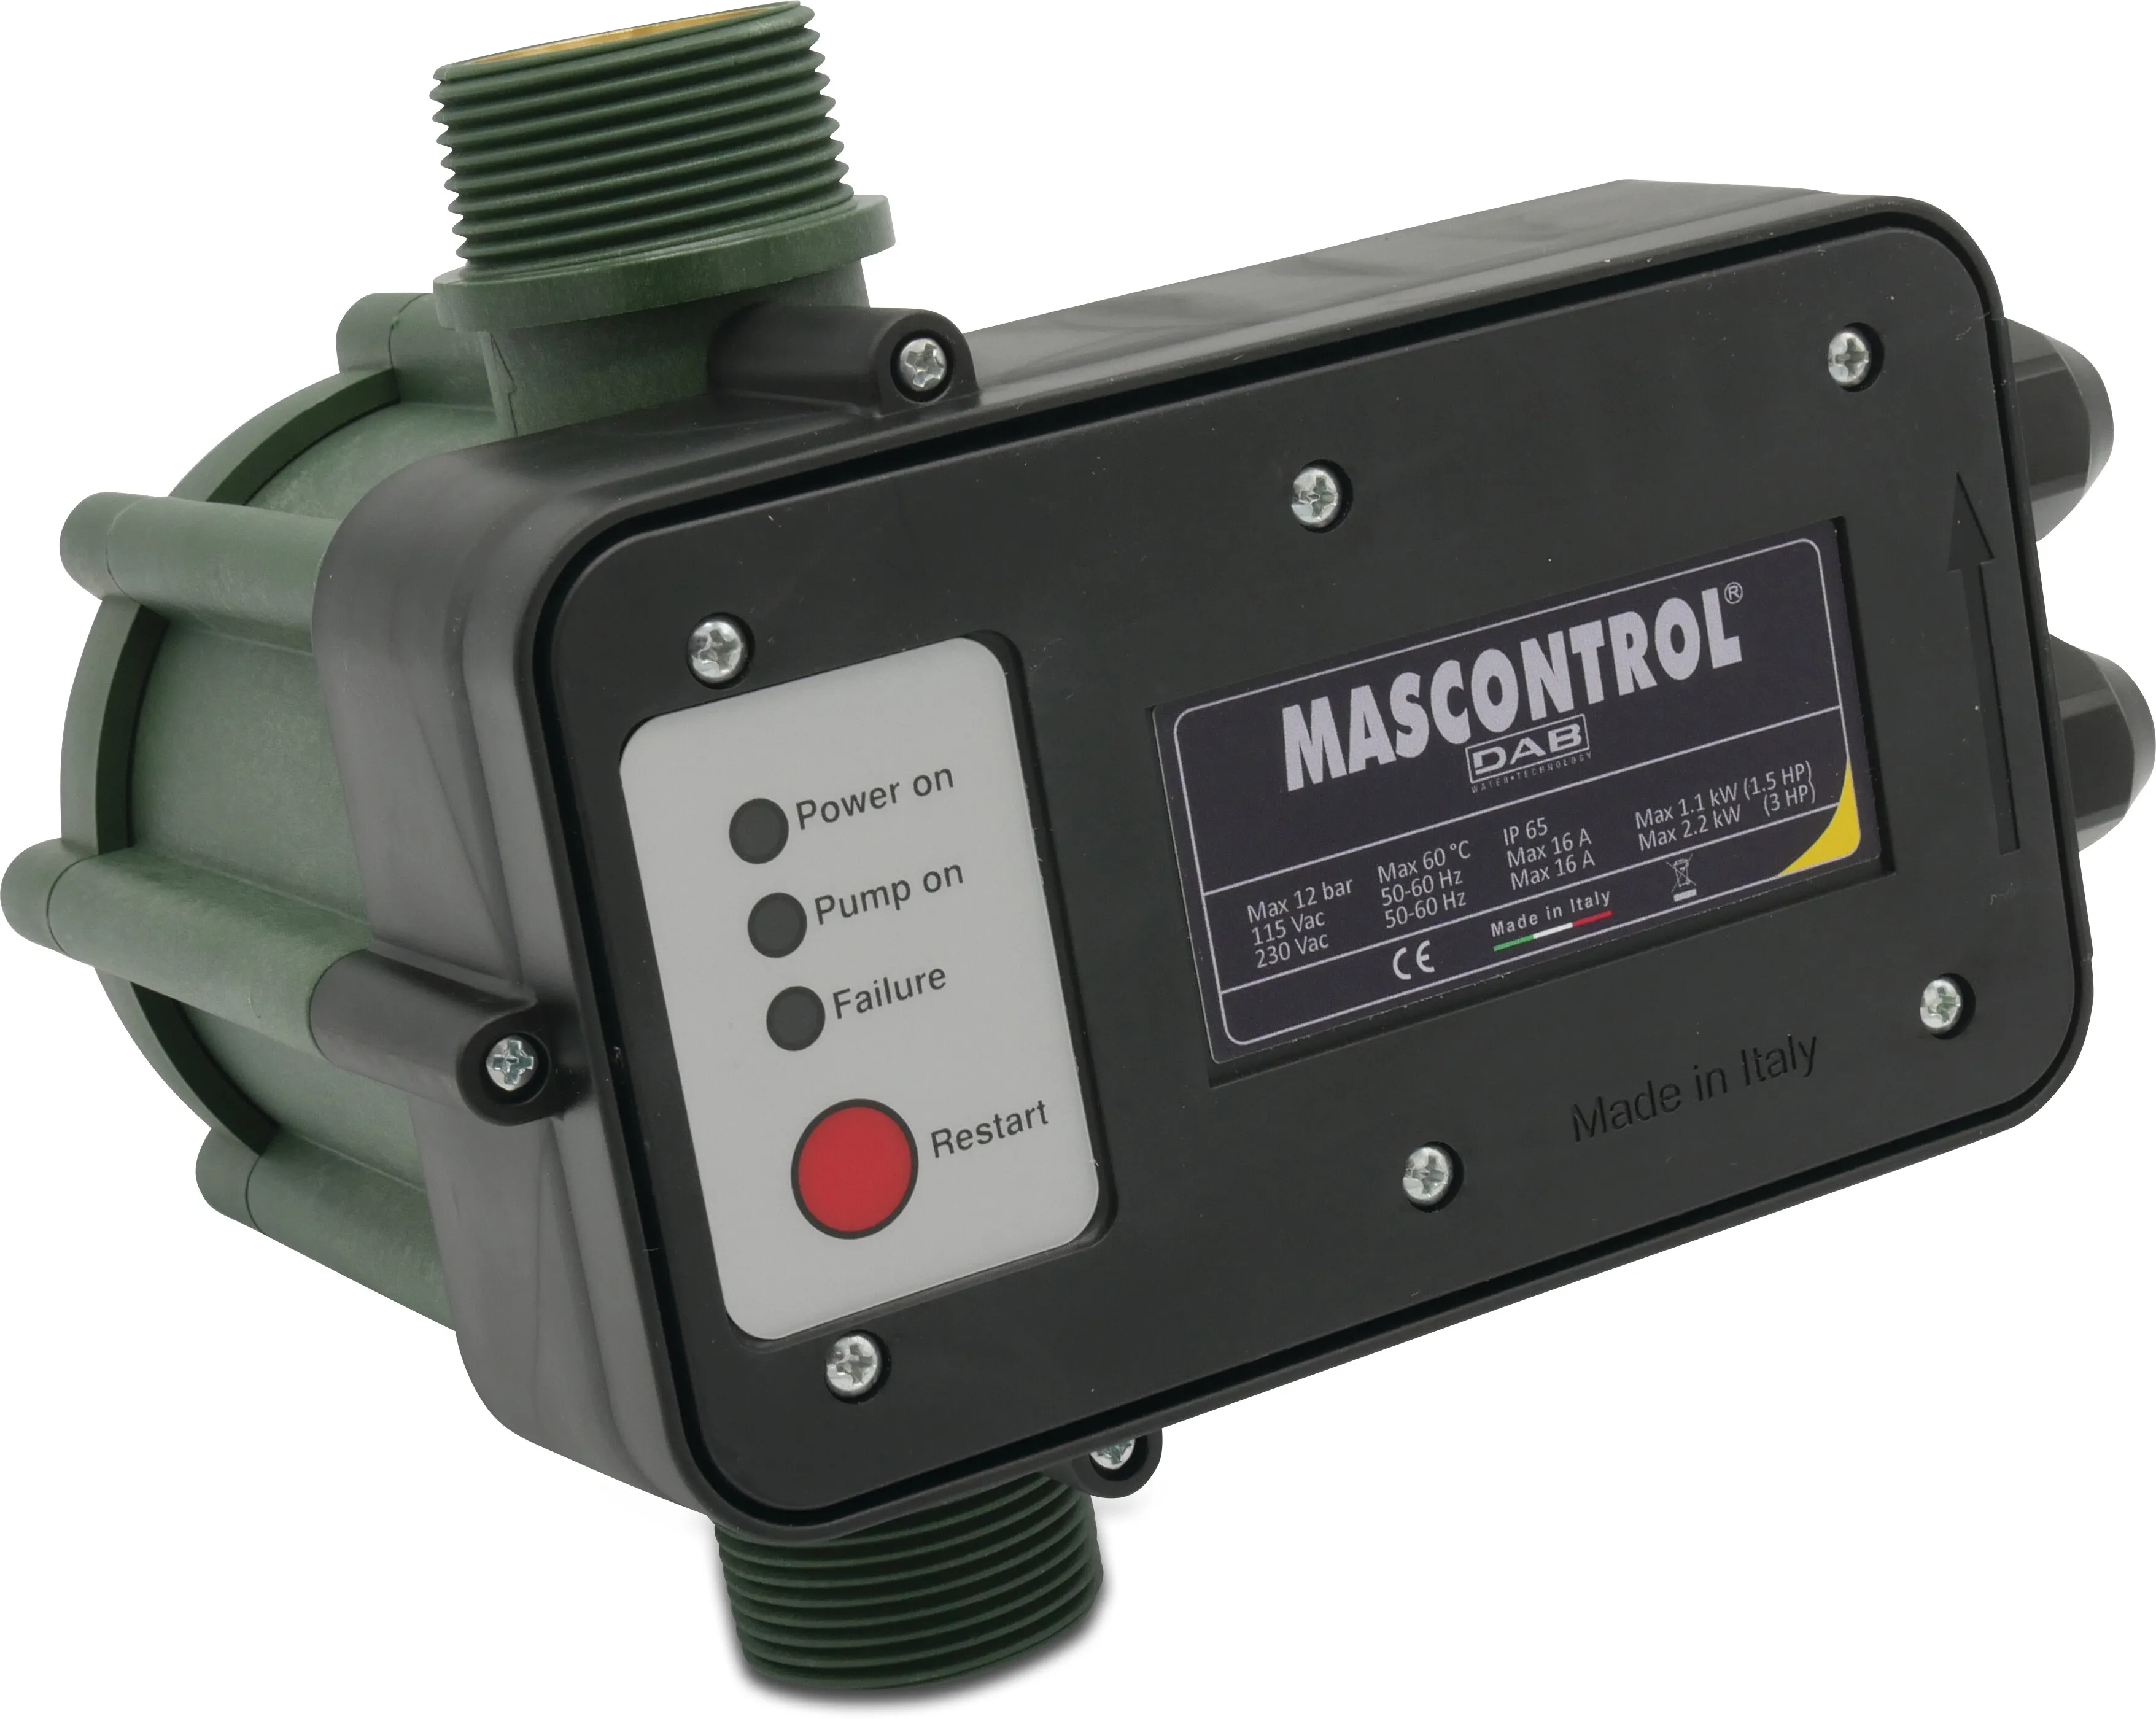 DAB Trykkontrol tørkørselsbeskyttelse 1 1/4" udvendig gevind 230VAC grøn type Mas Control uden kabel